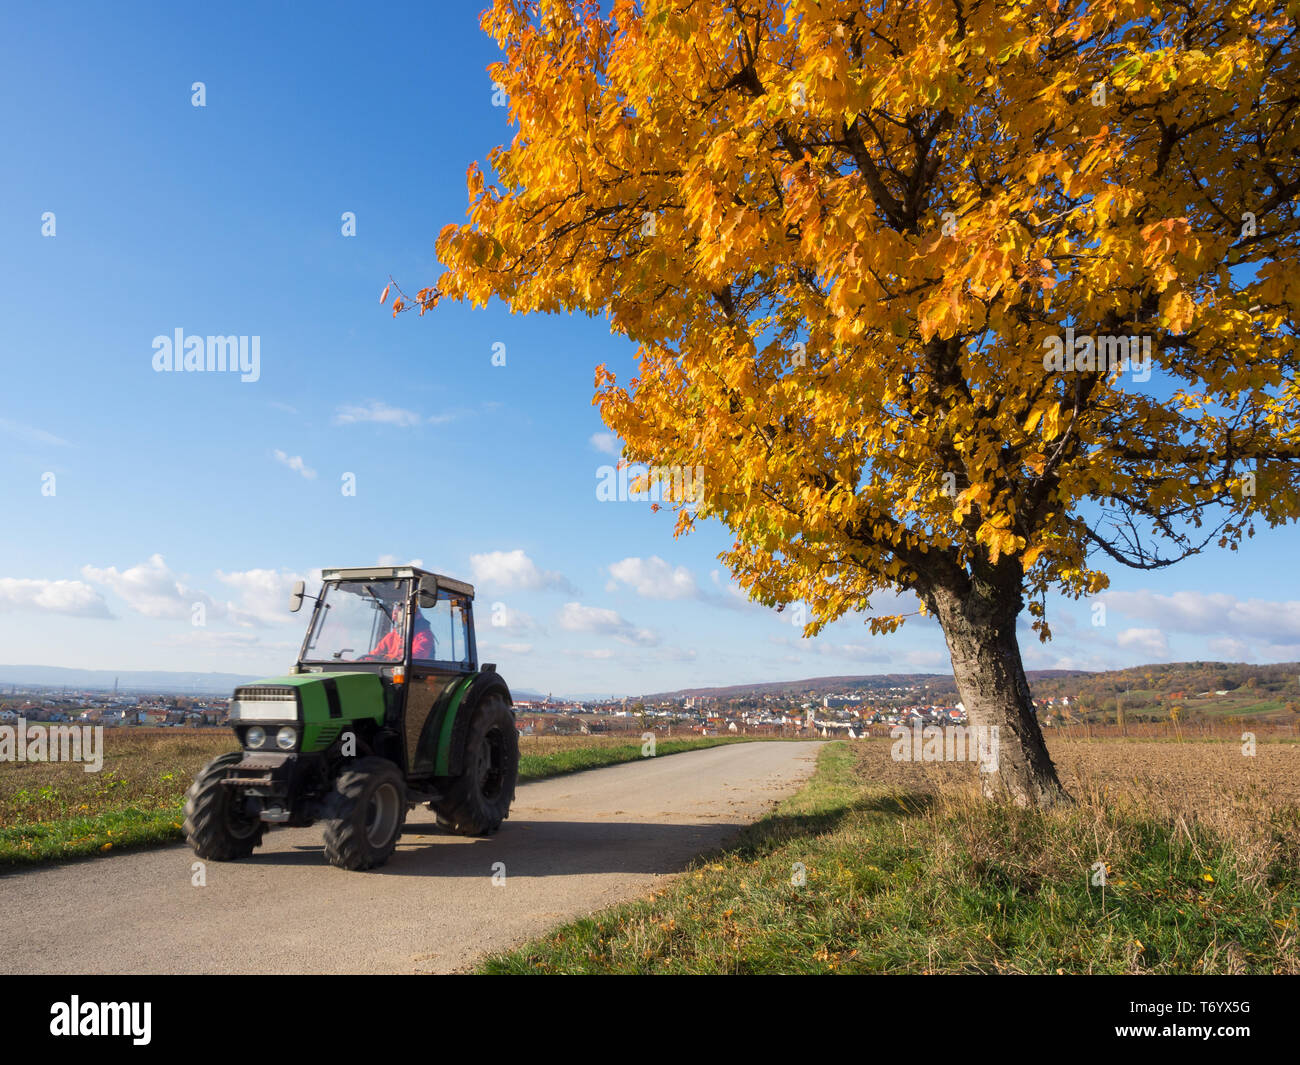 Escena rural con el tractor Foto de stock